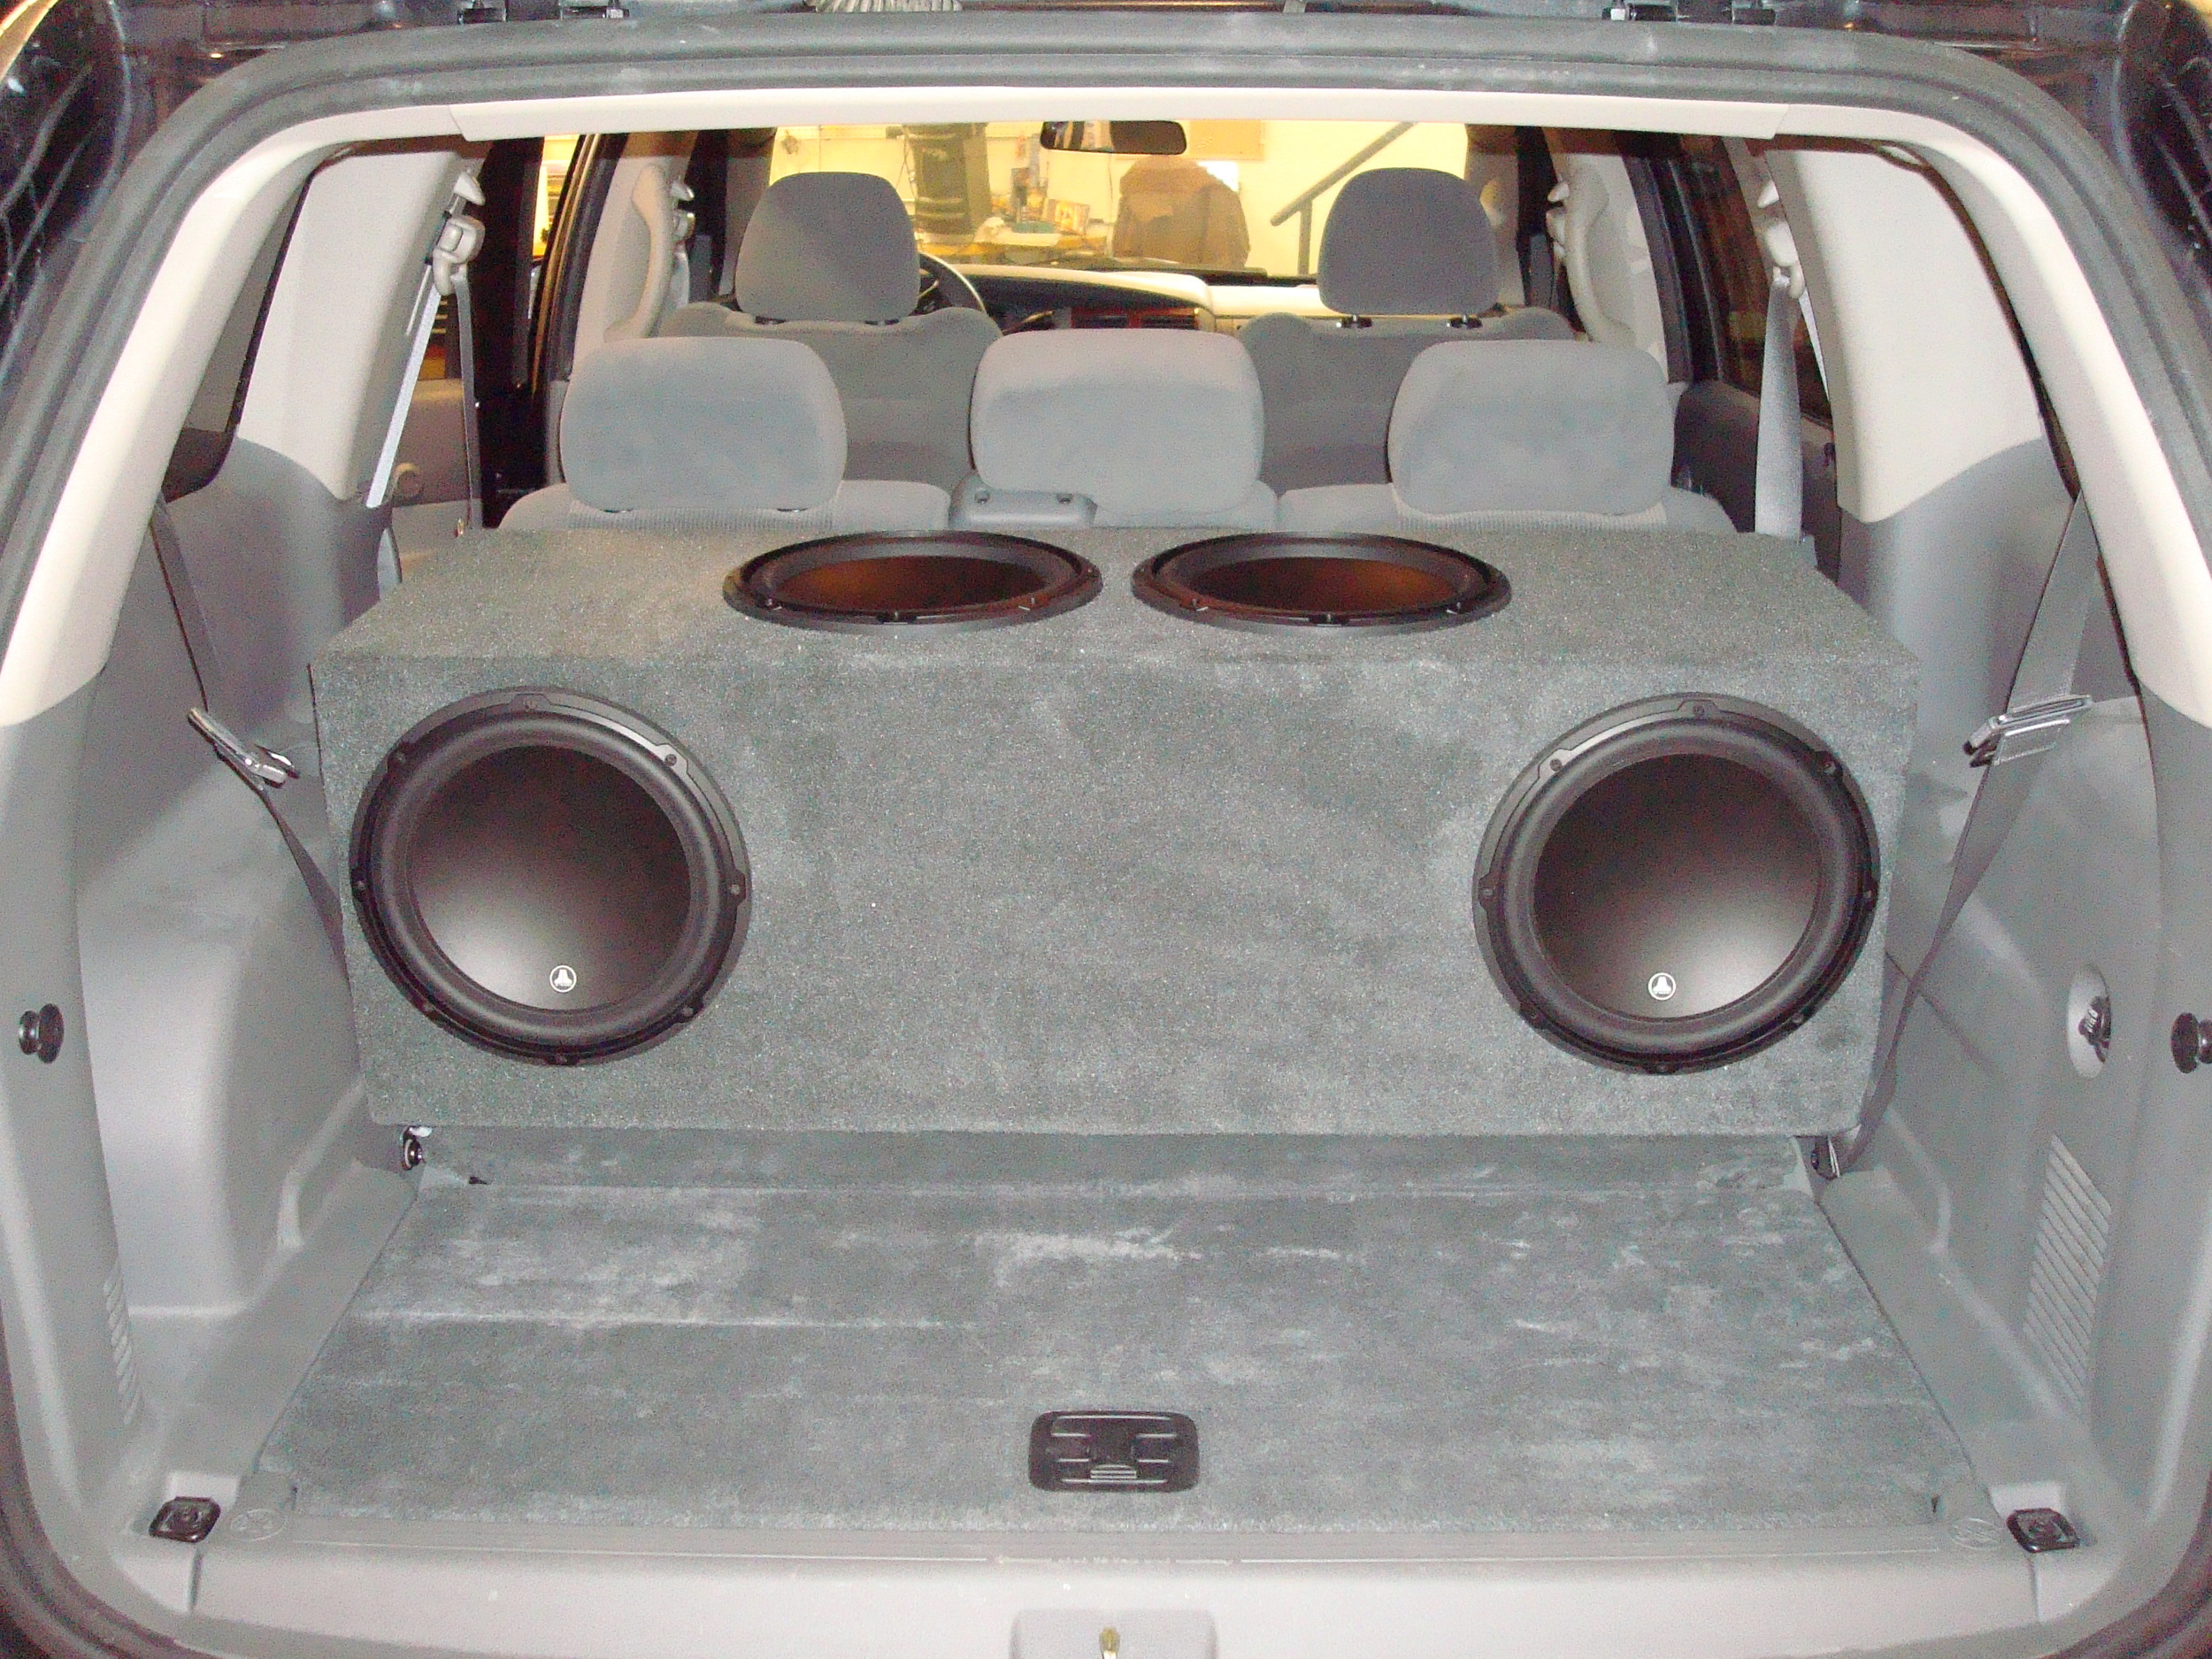 2006 Durango - Custom Subwoofer Enclosure for (4) Jl Audio 12W3's